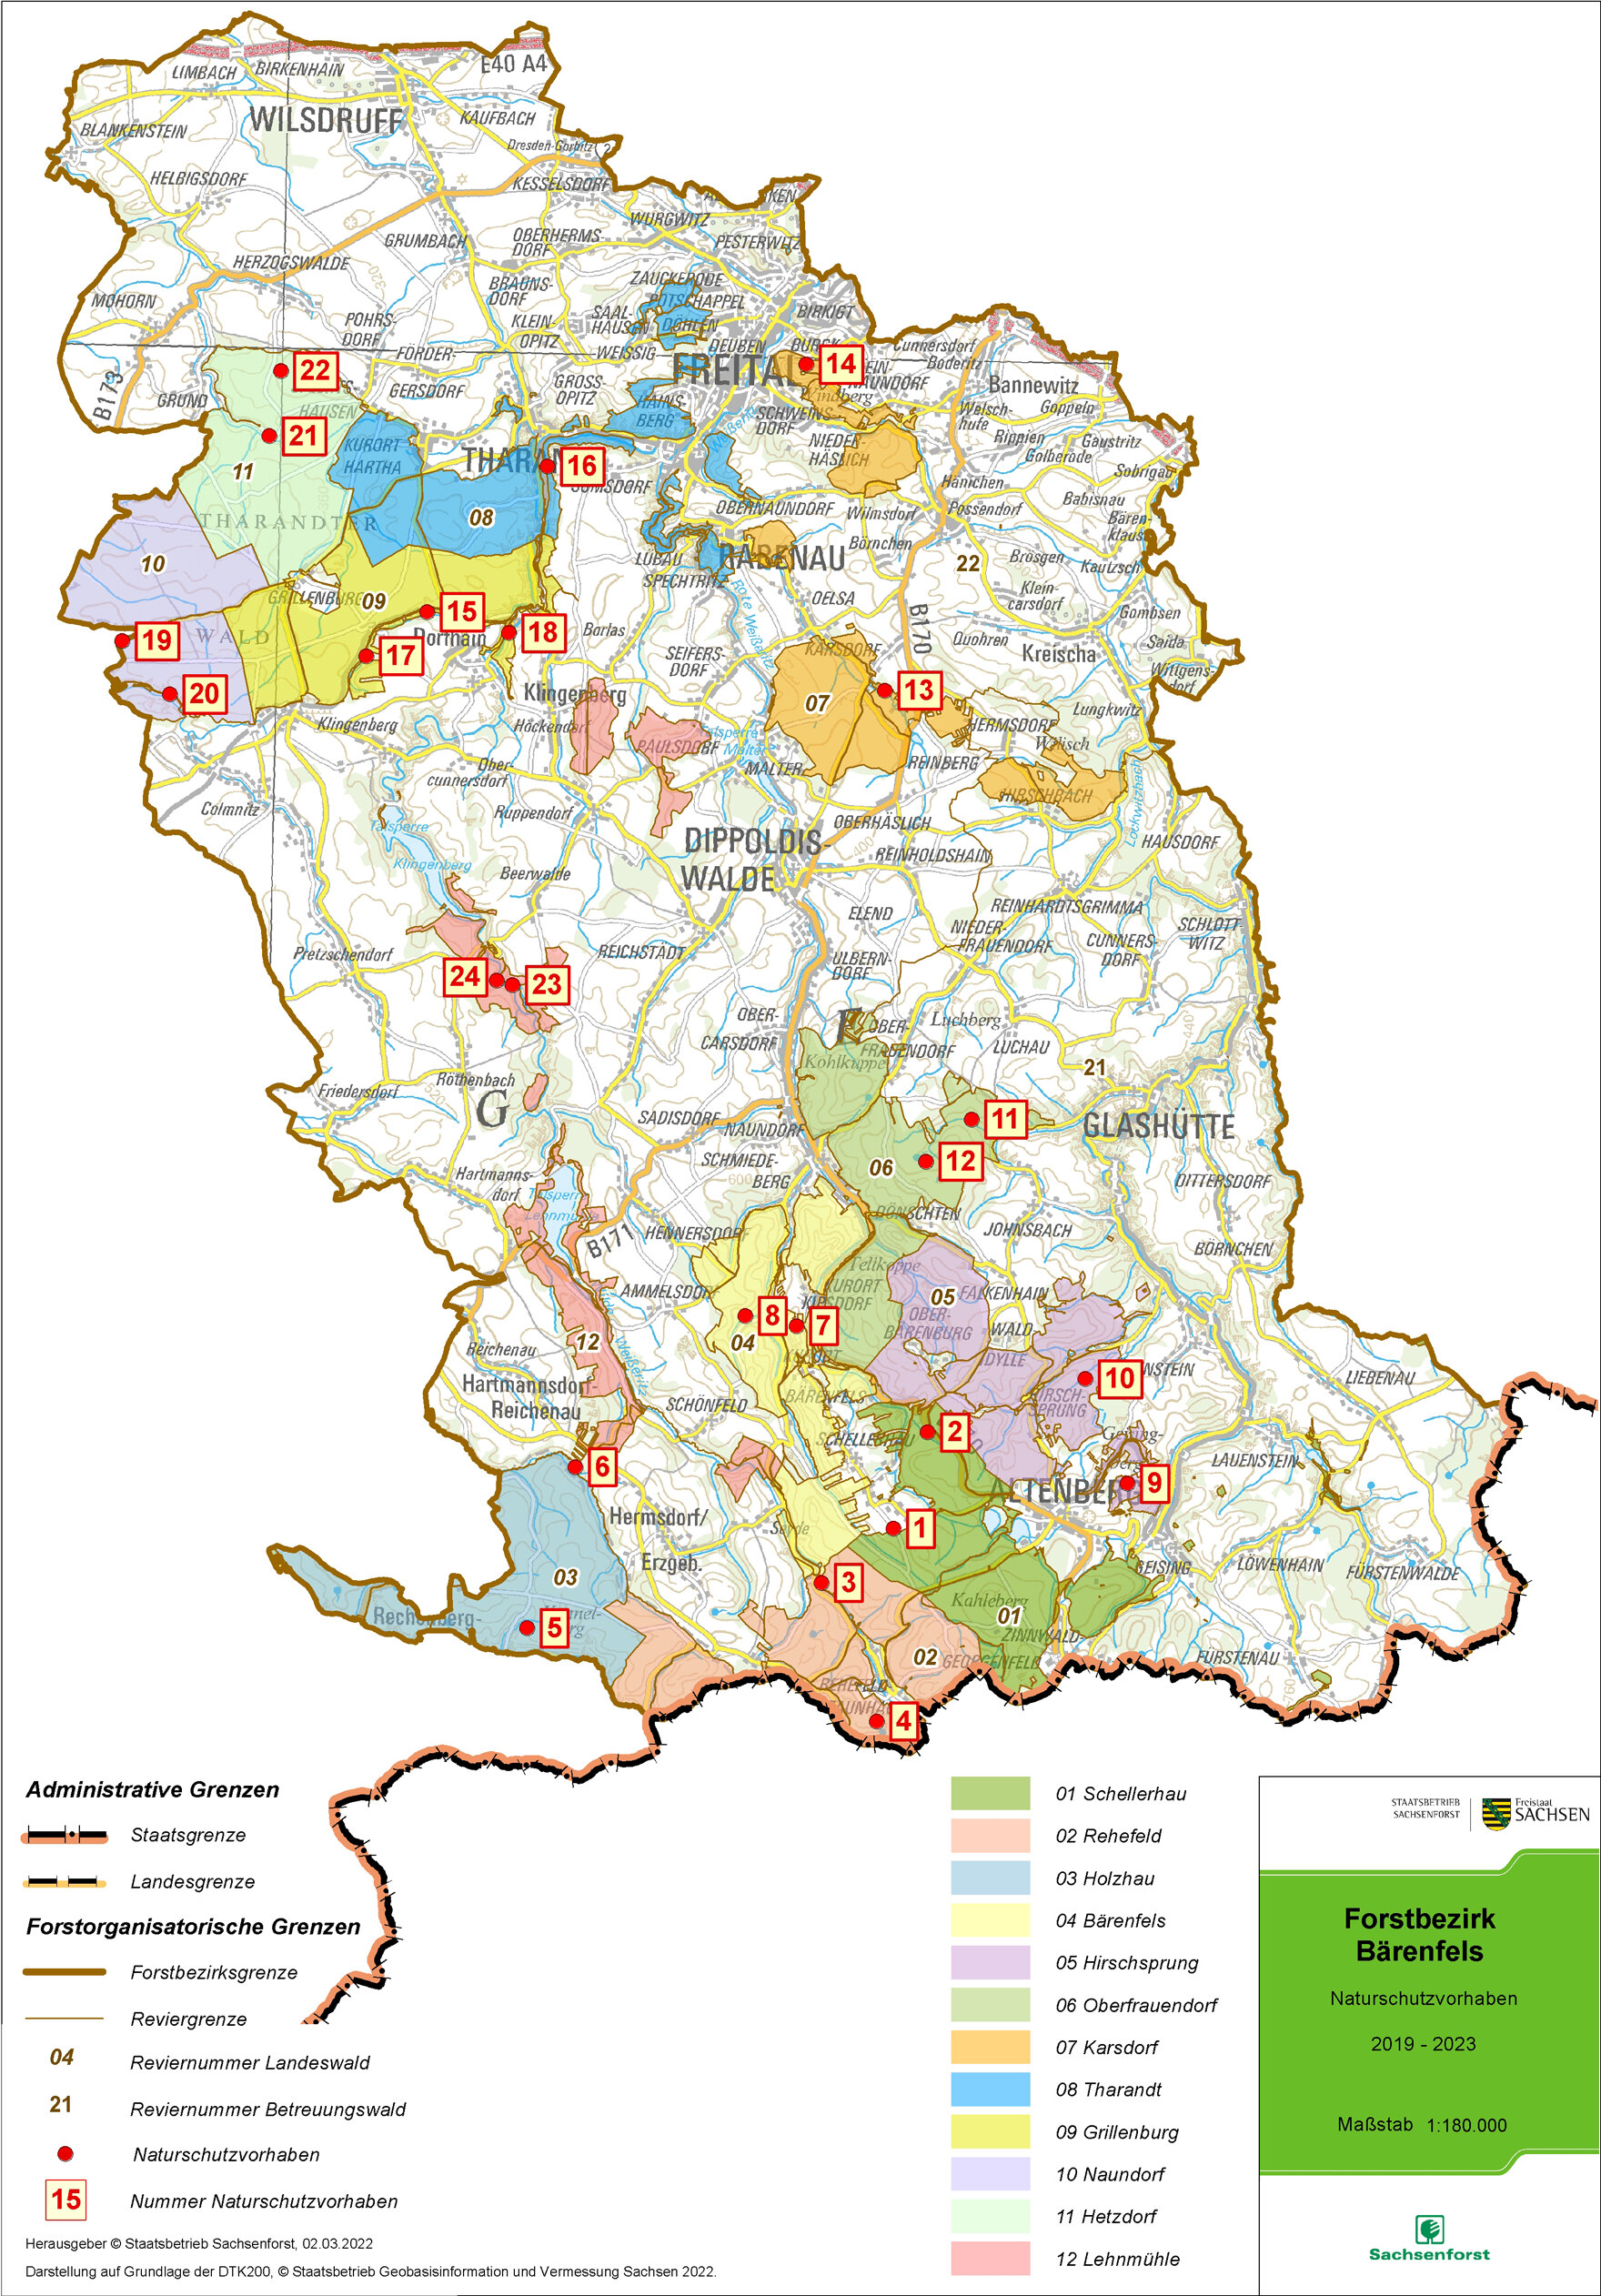 Übersichtskarte des Forstbezirkes mit eingezeichneten Standorten der Naturschutzprojekte.